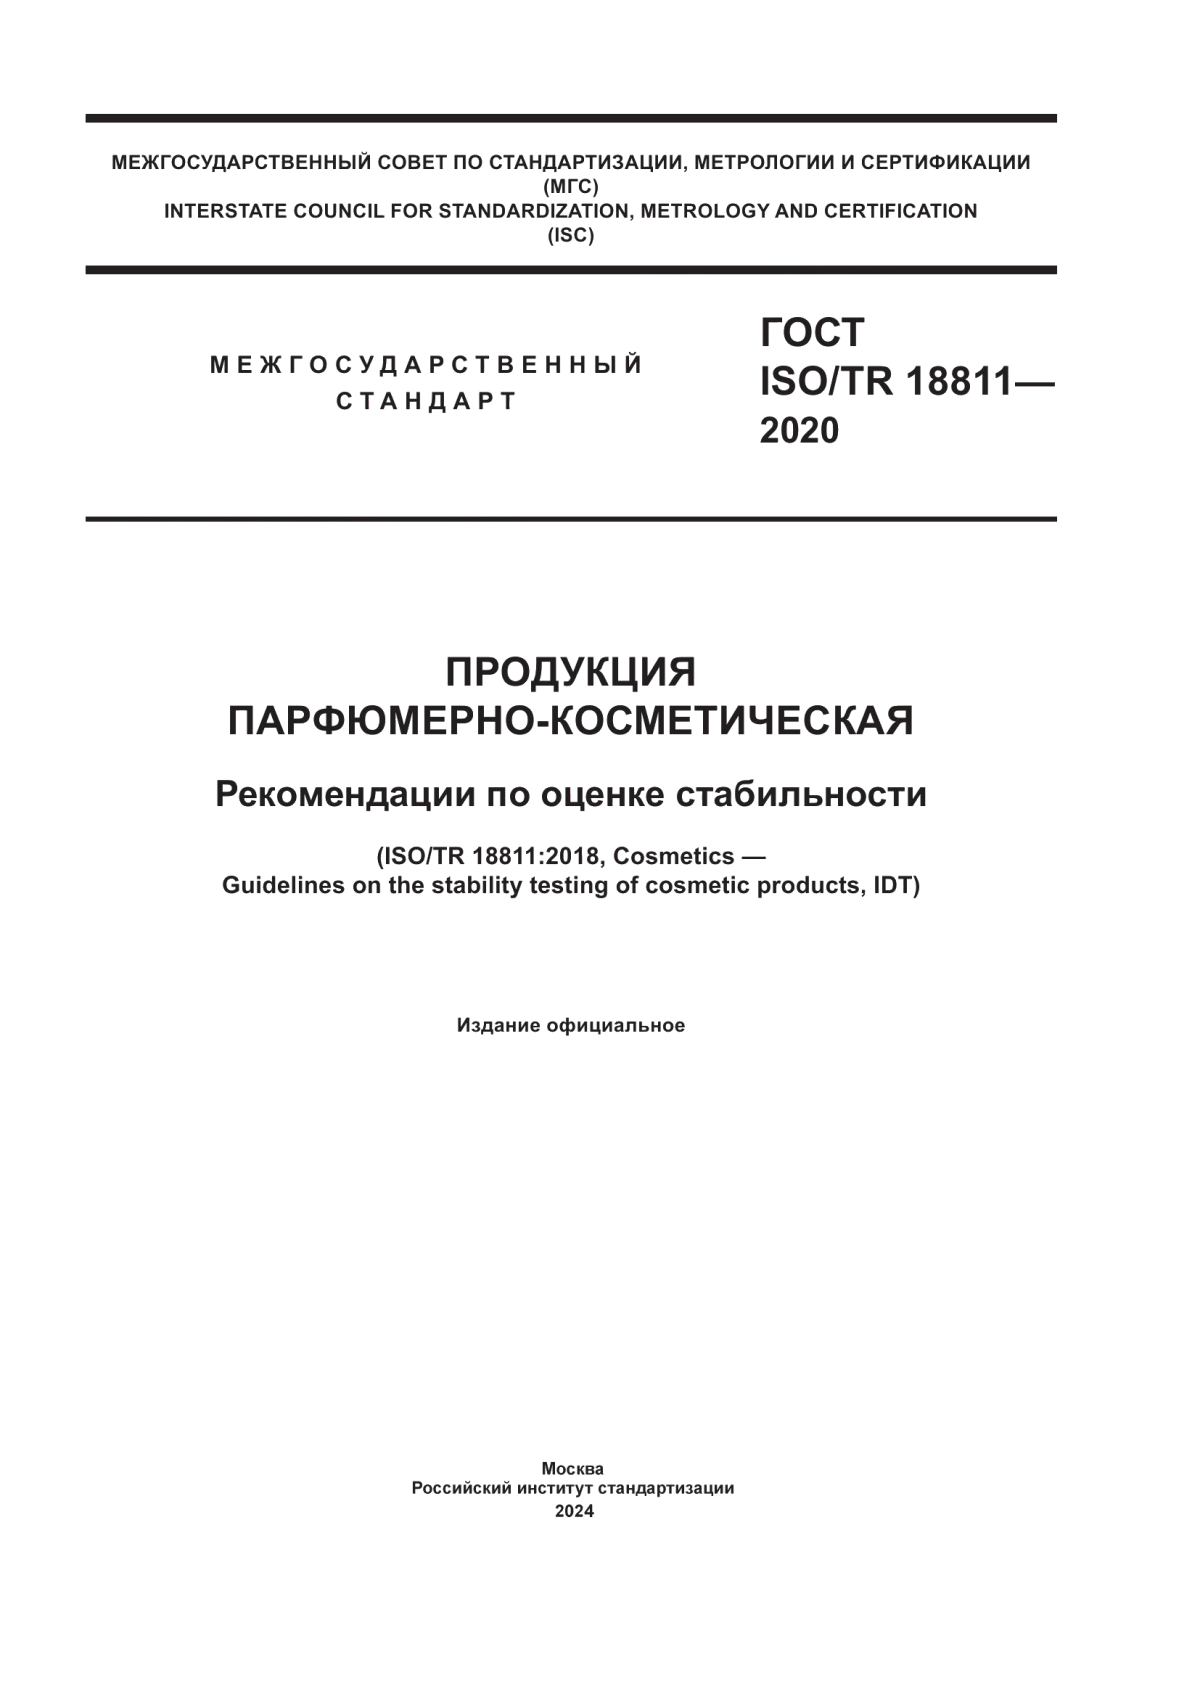 ГОСТ ISO/TR 18811-2020 Продукция парфюмерно-косметическая. Рекомендации по оценке стабильности